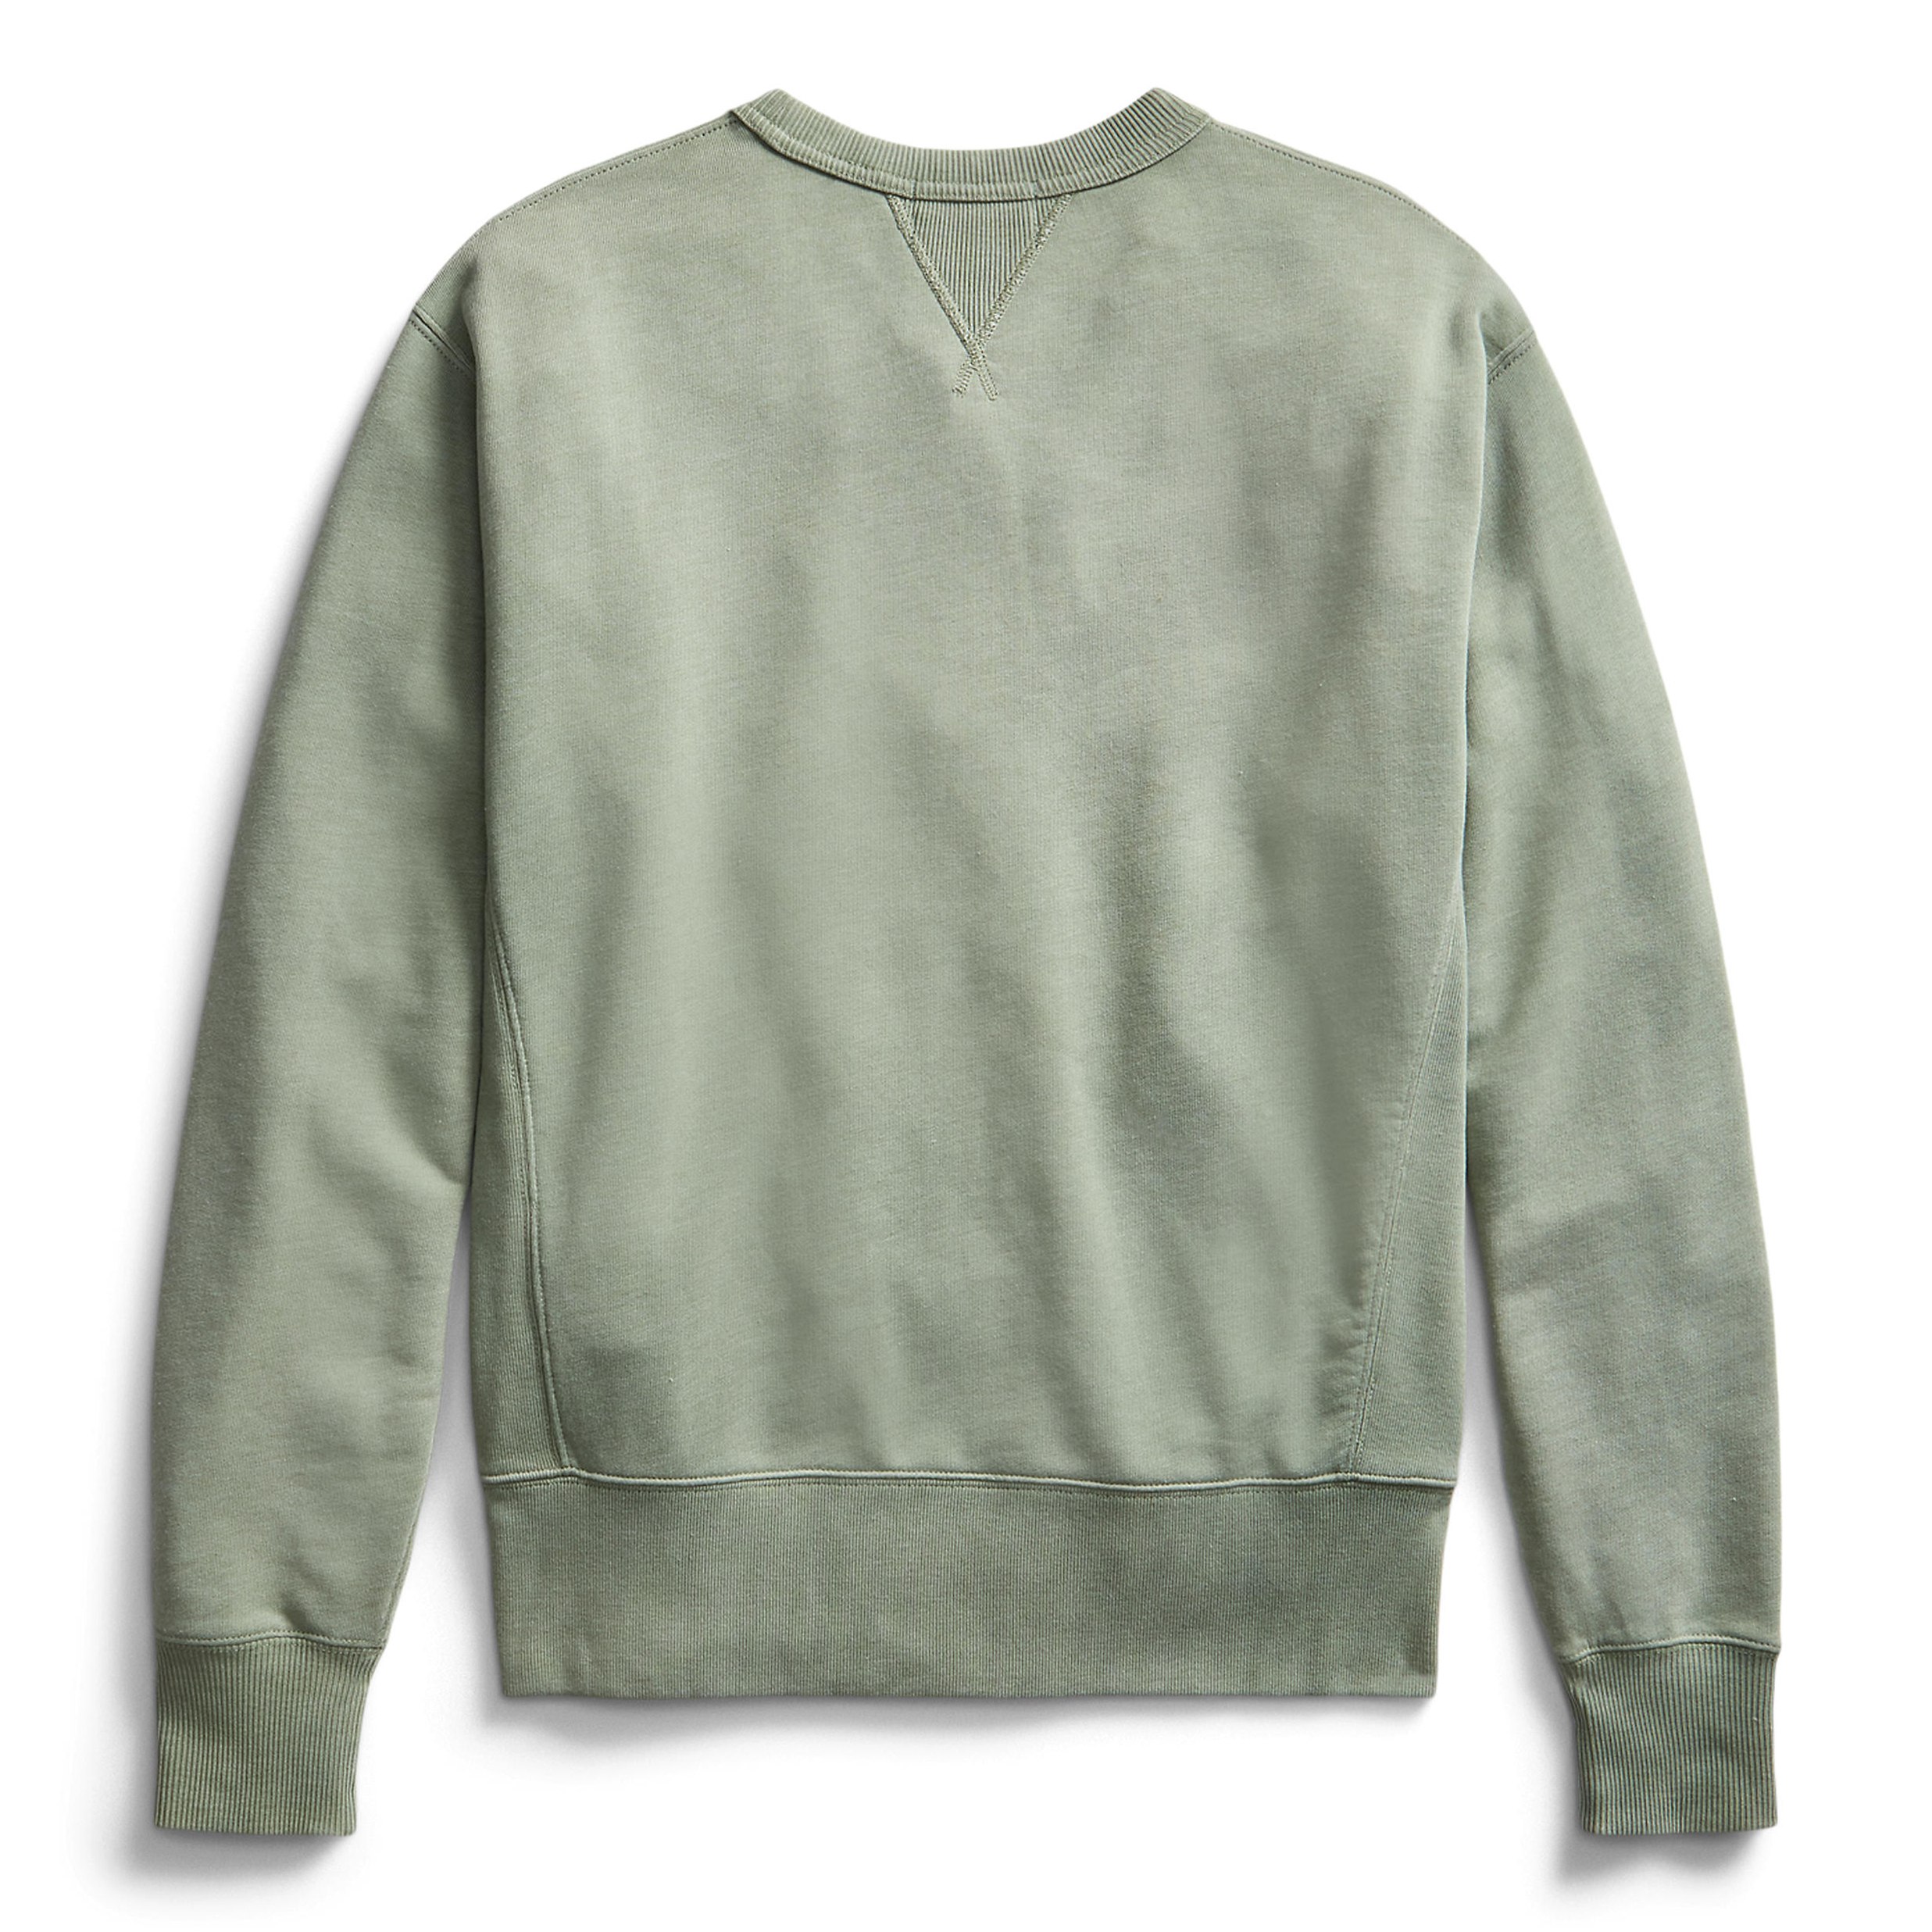 Shop Men's Crew Neck Sweaters & Sweatshirts | Huckberry